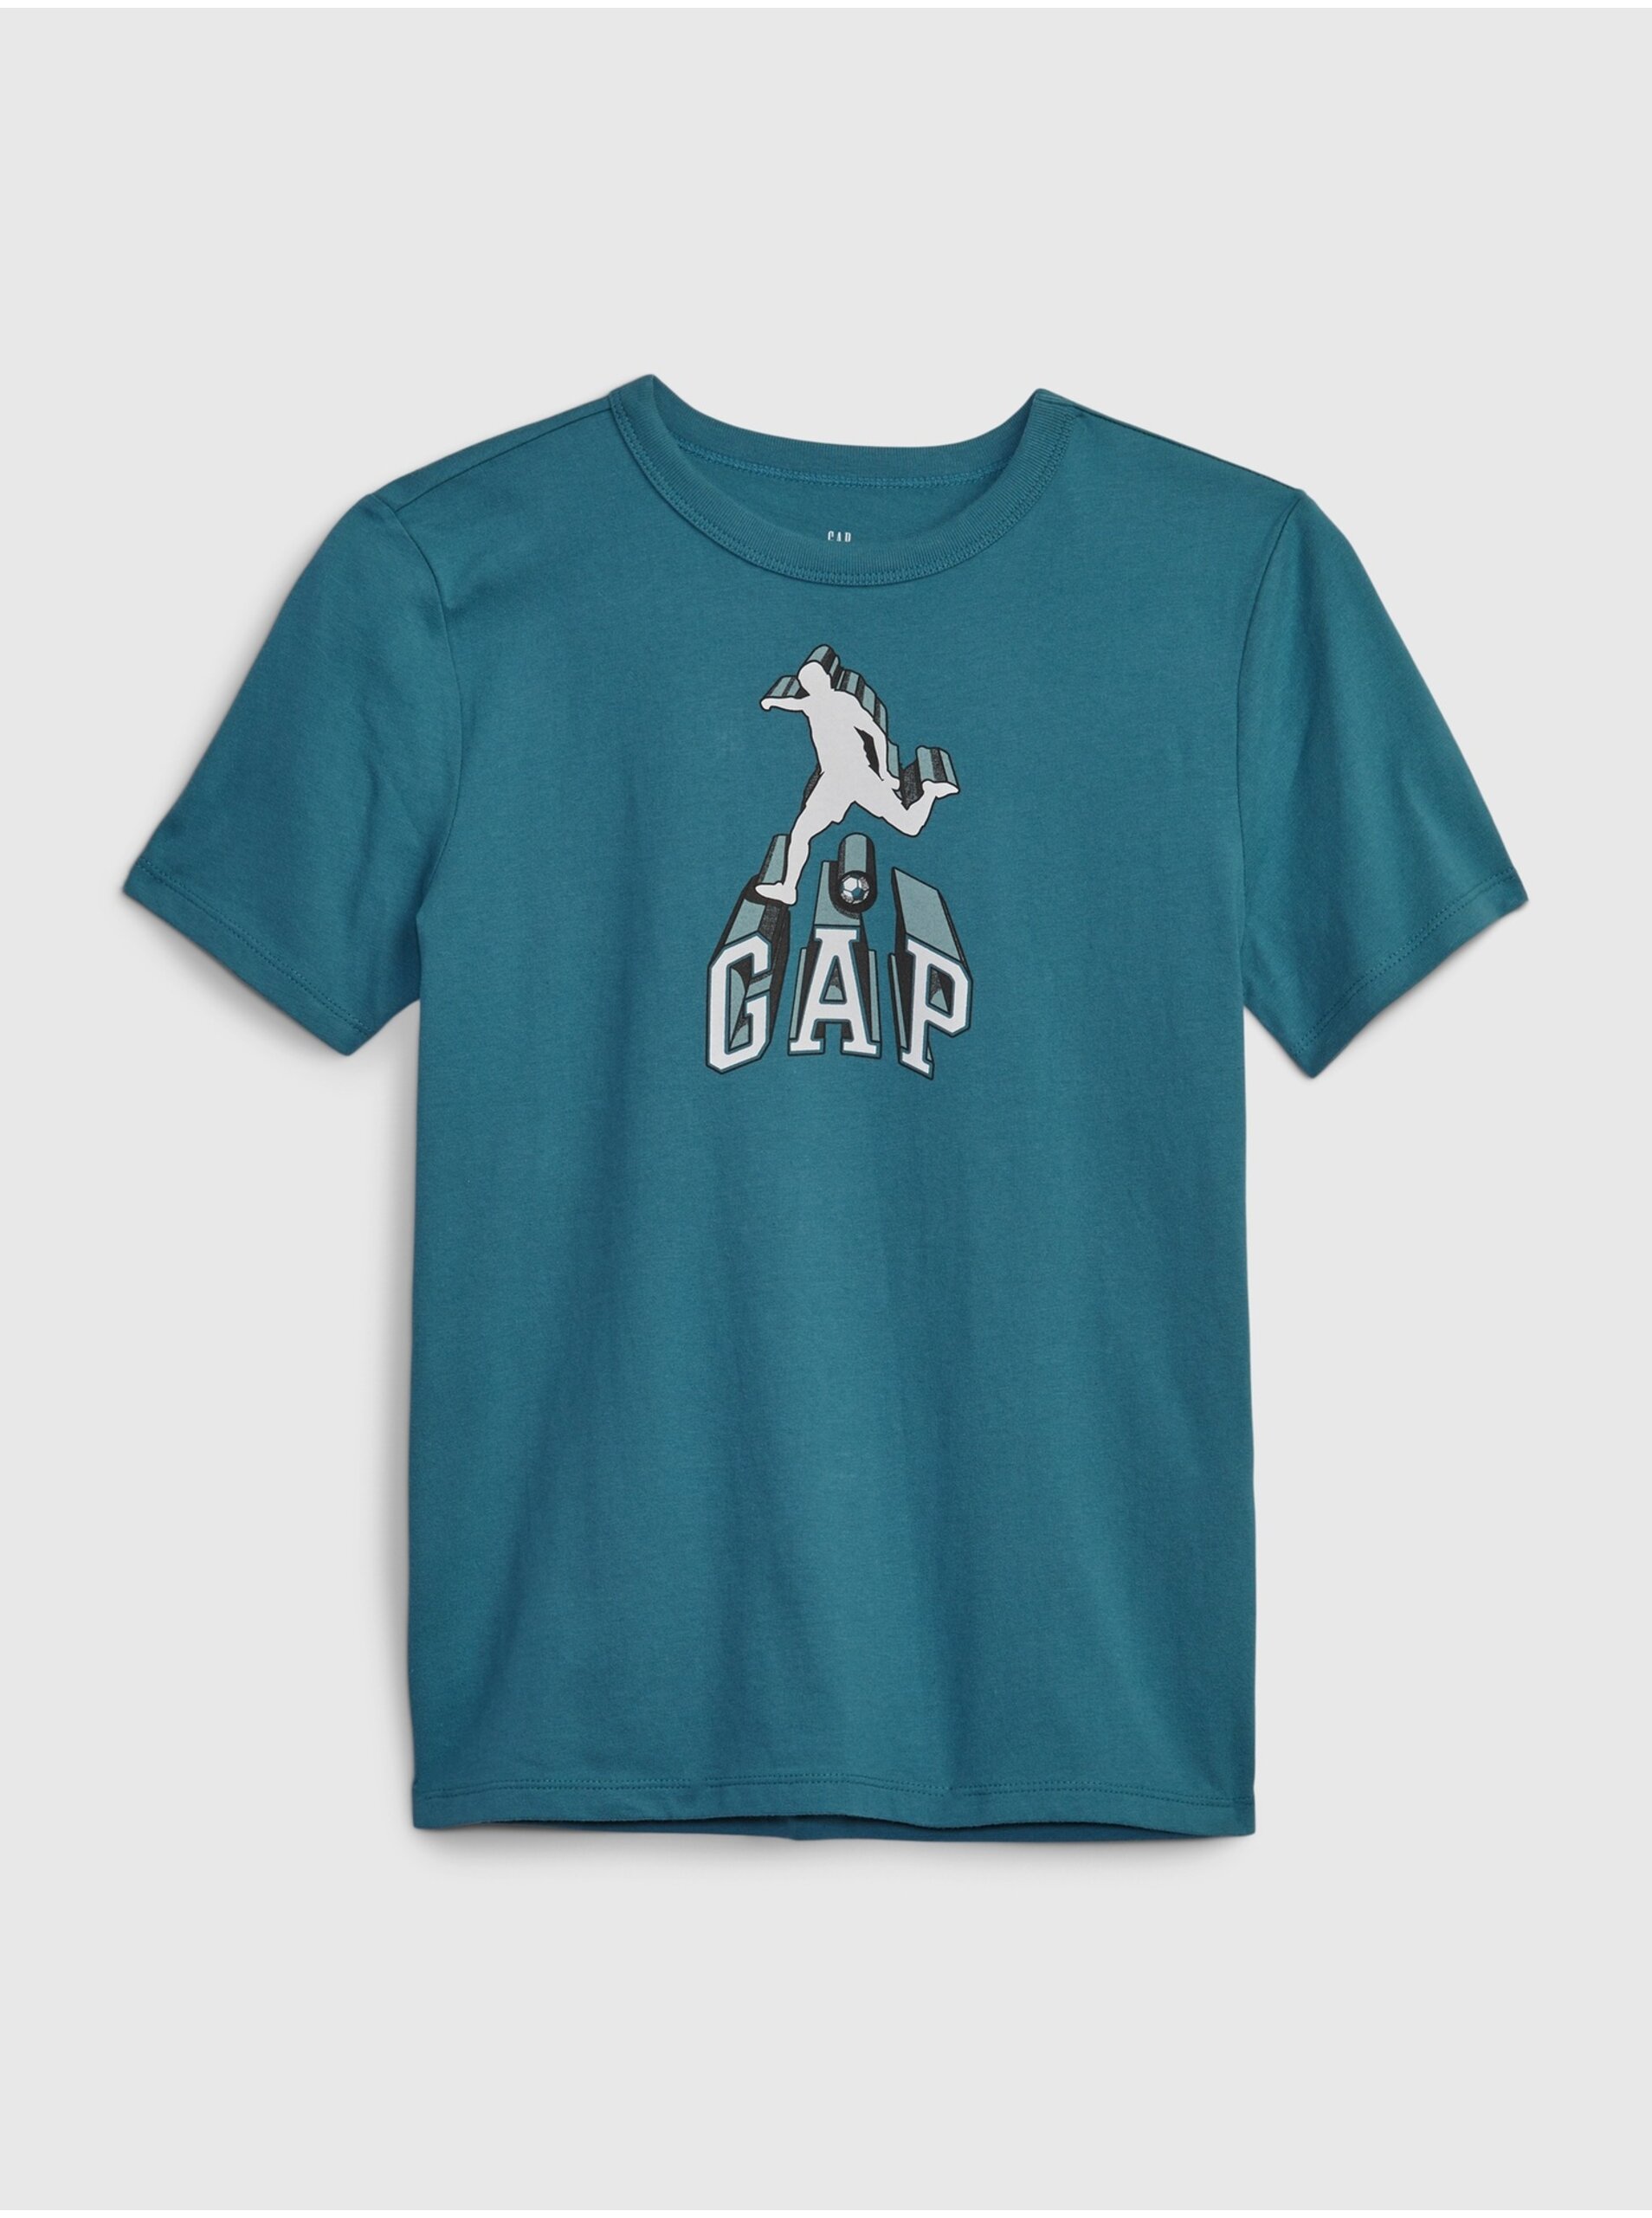 Lacno Modré chlapčenské tričko s potlačou GAP